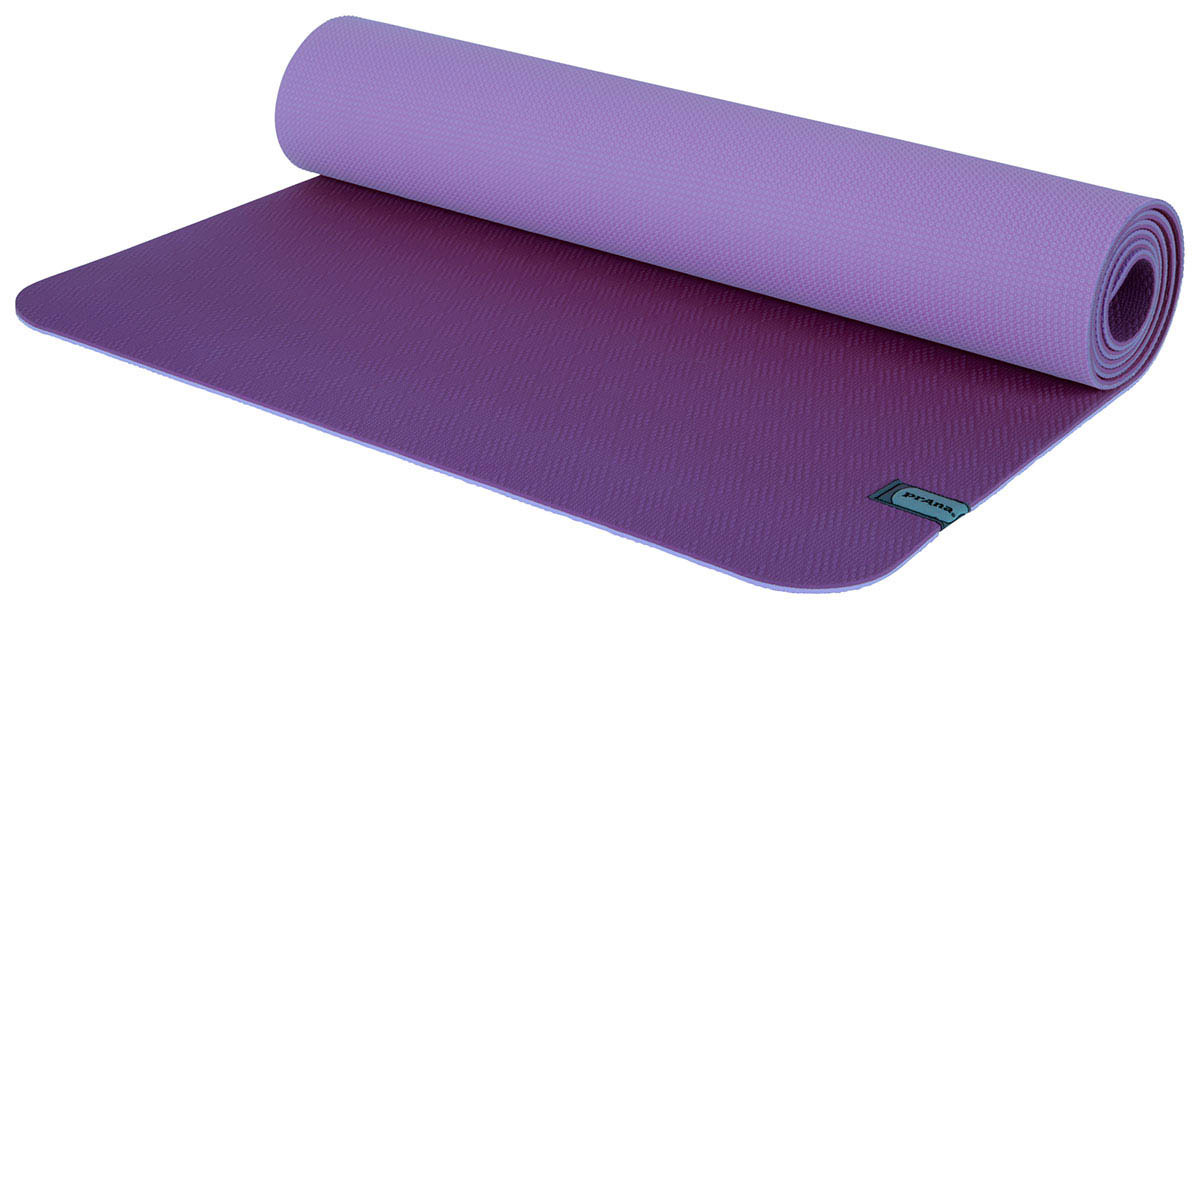 prAna E.C.O. Yoga Mat, Atlantic, One Size, U6ECOS110-ATL-O/S